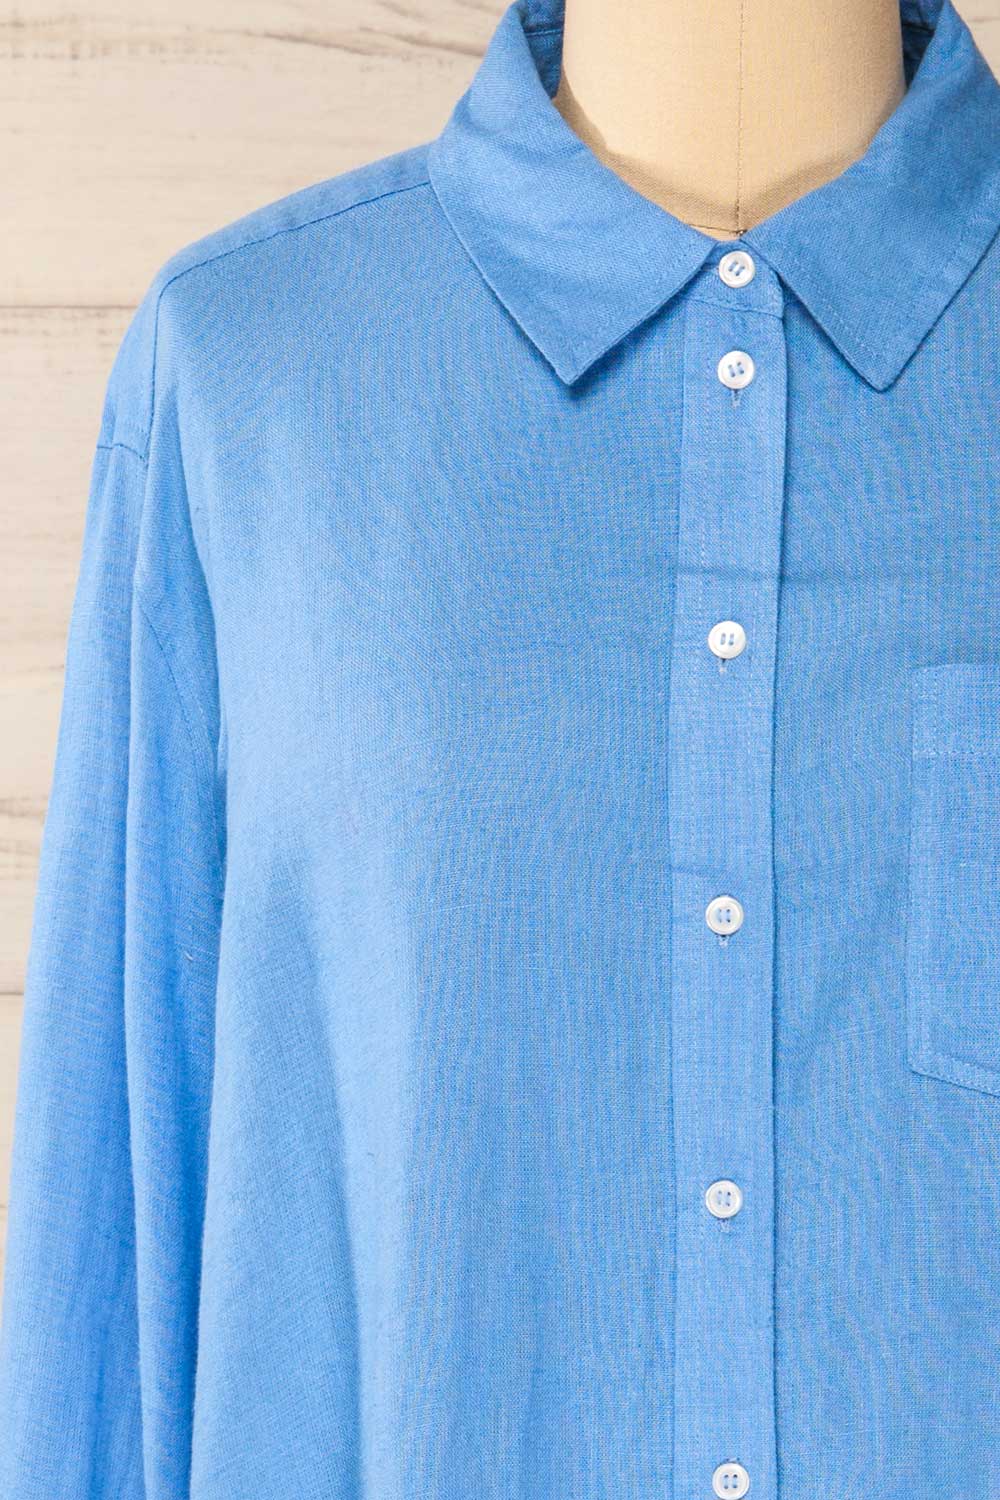 Musigen Blue Oversized Linen Shirt | La petite garçonne front close-up